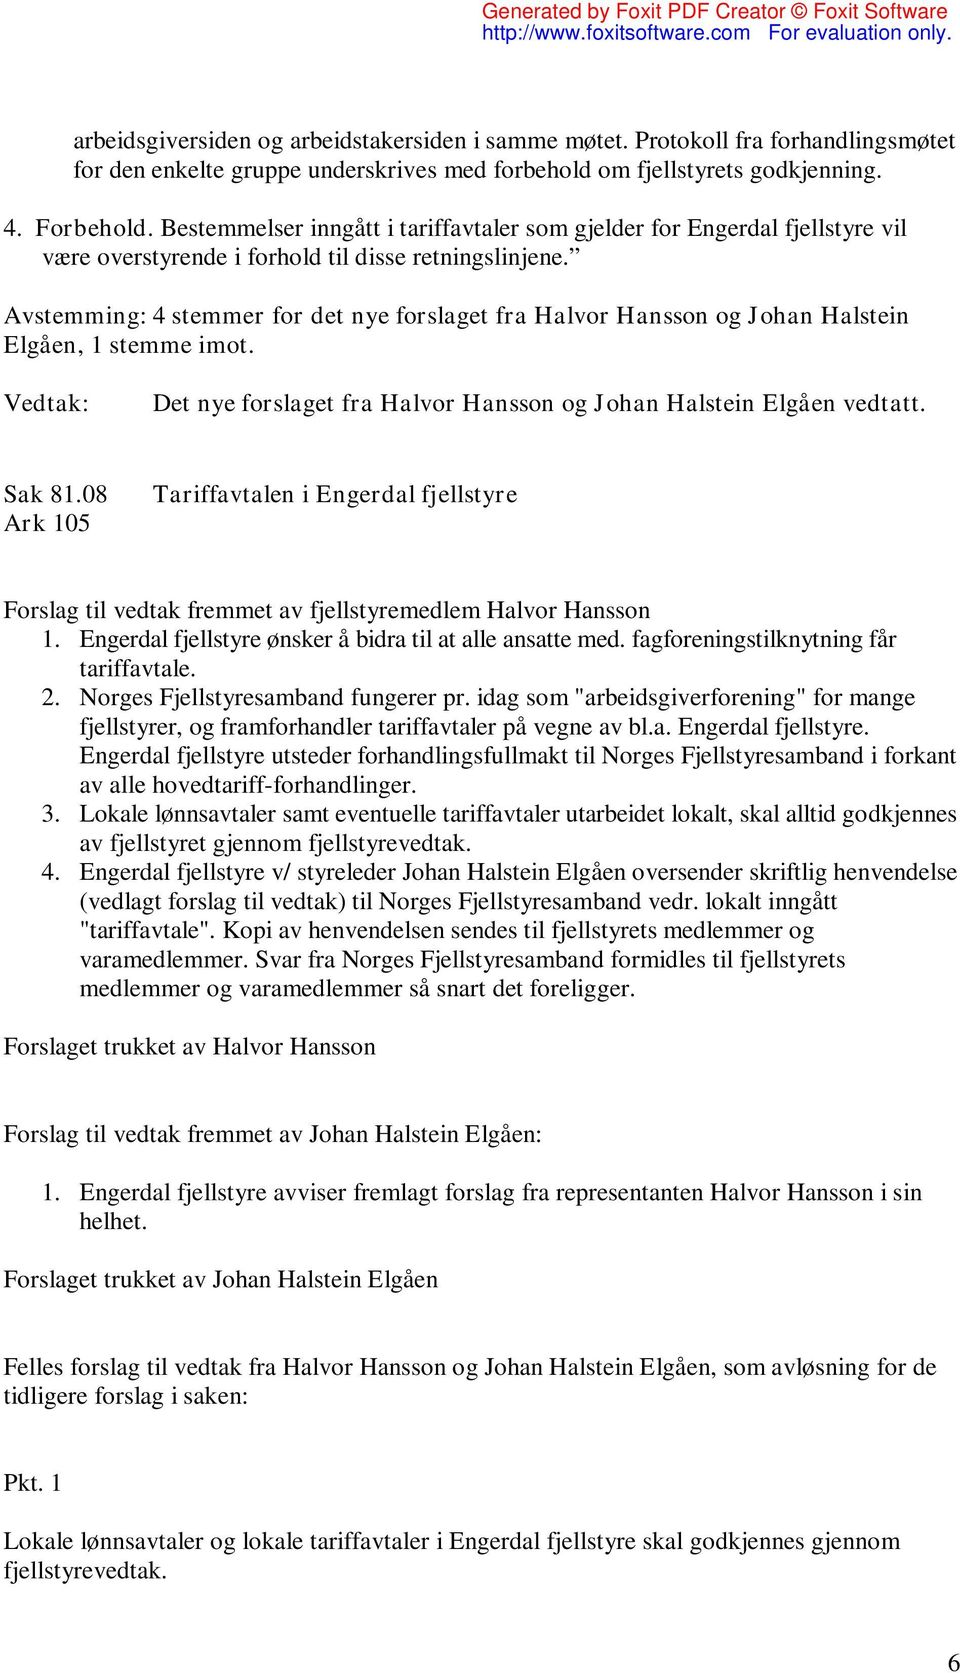 Avstemming: 4 stemmer for det nye forslaget fra Halvor Hansson og Johan Halstein Elgåen, 1 stemme imot. Det nye forslaget fra Halvor Hansson og Johan Halstein Elgåen vedtatt. Sak 81.